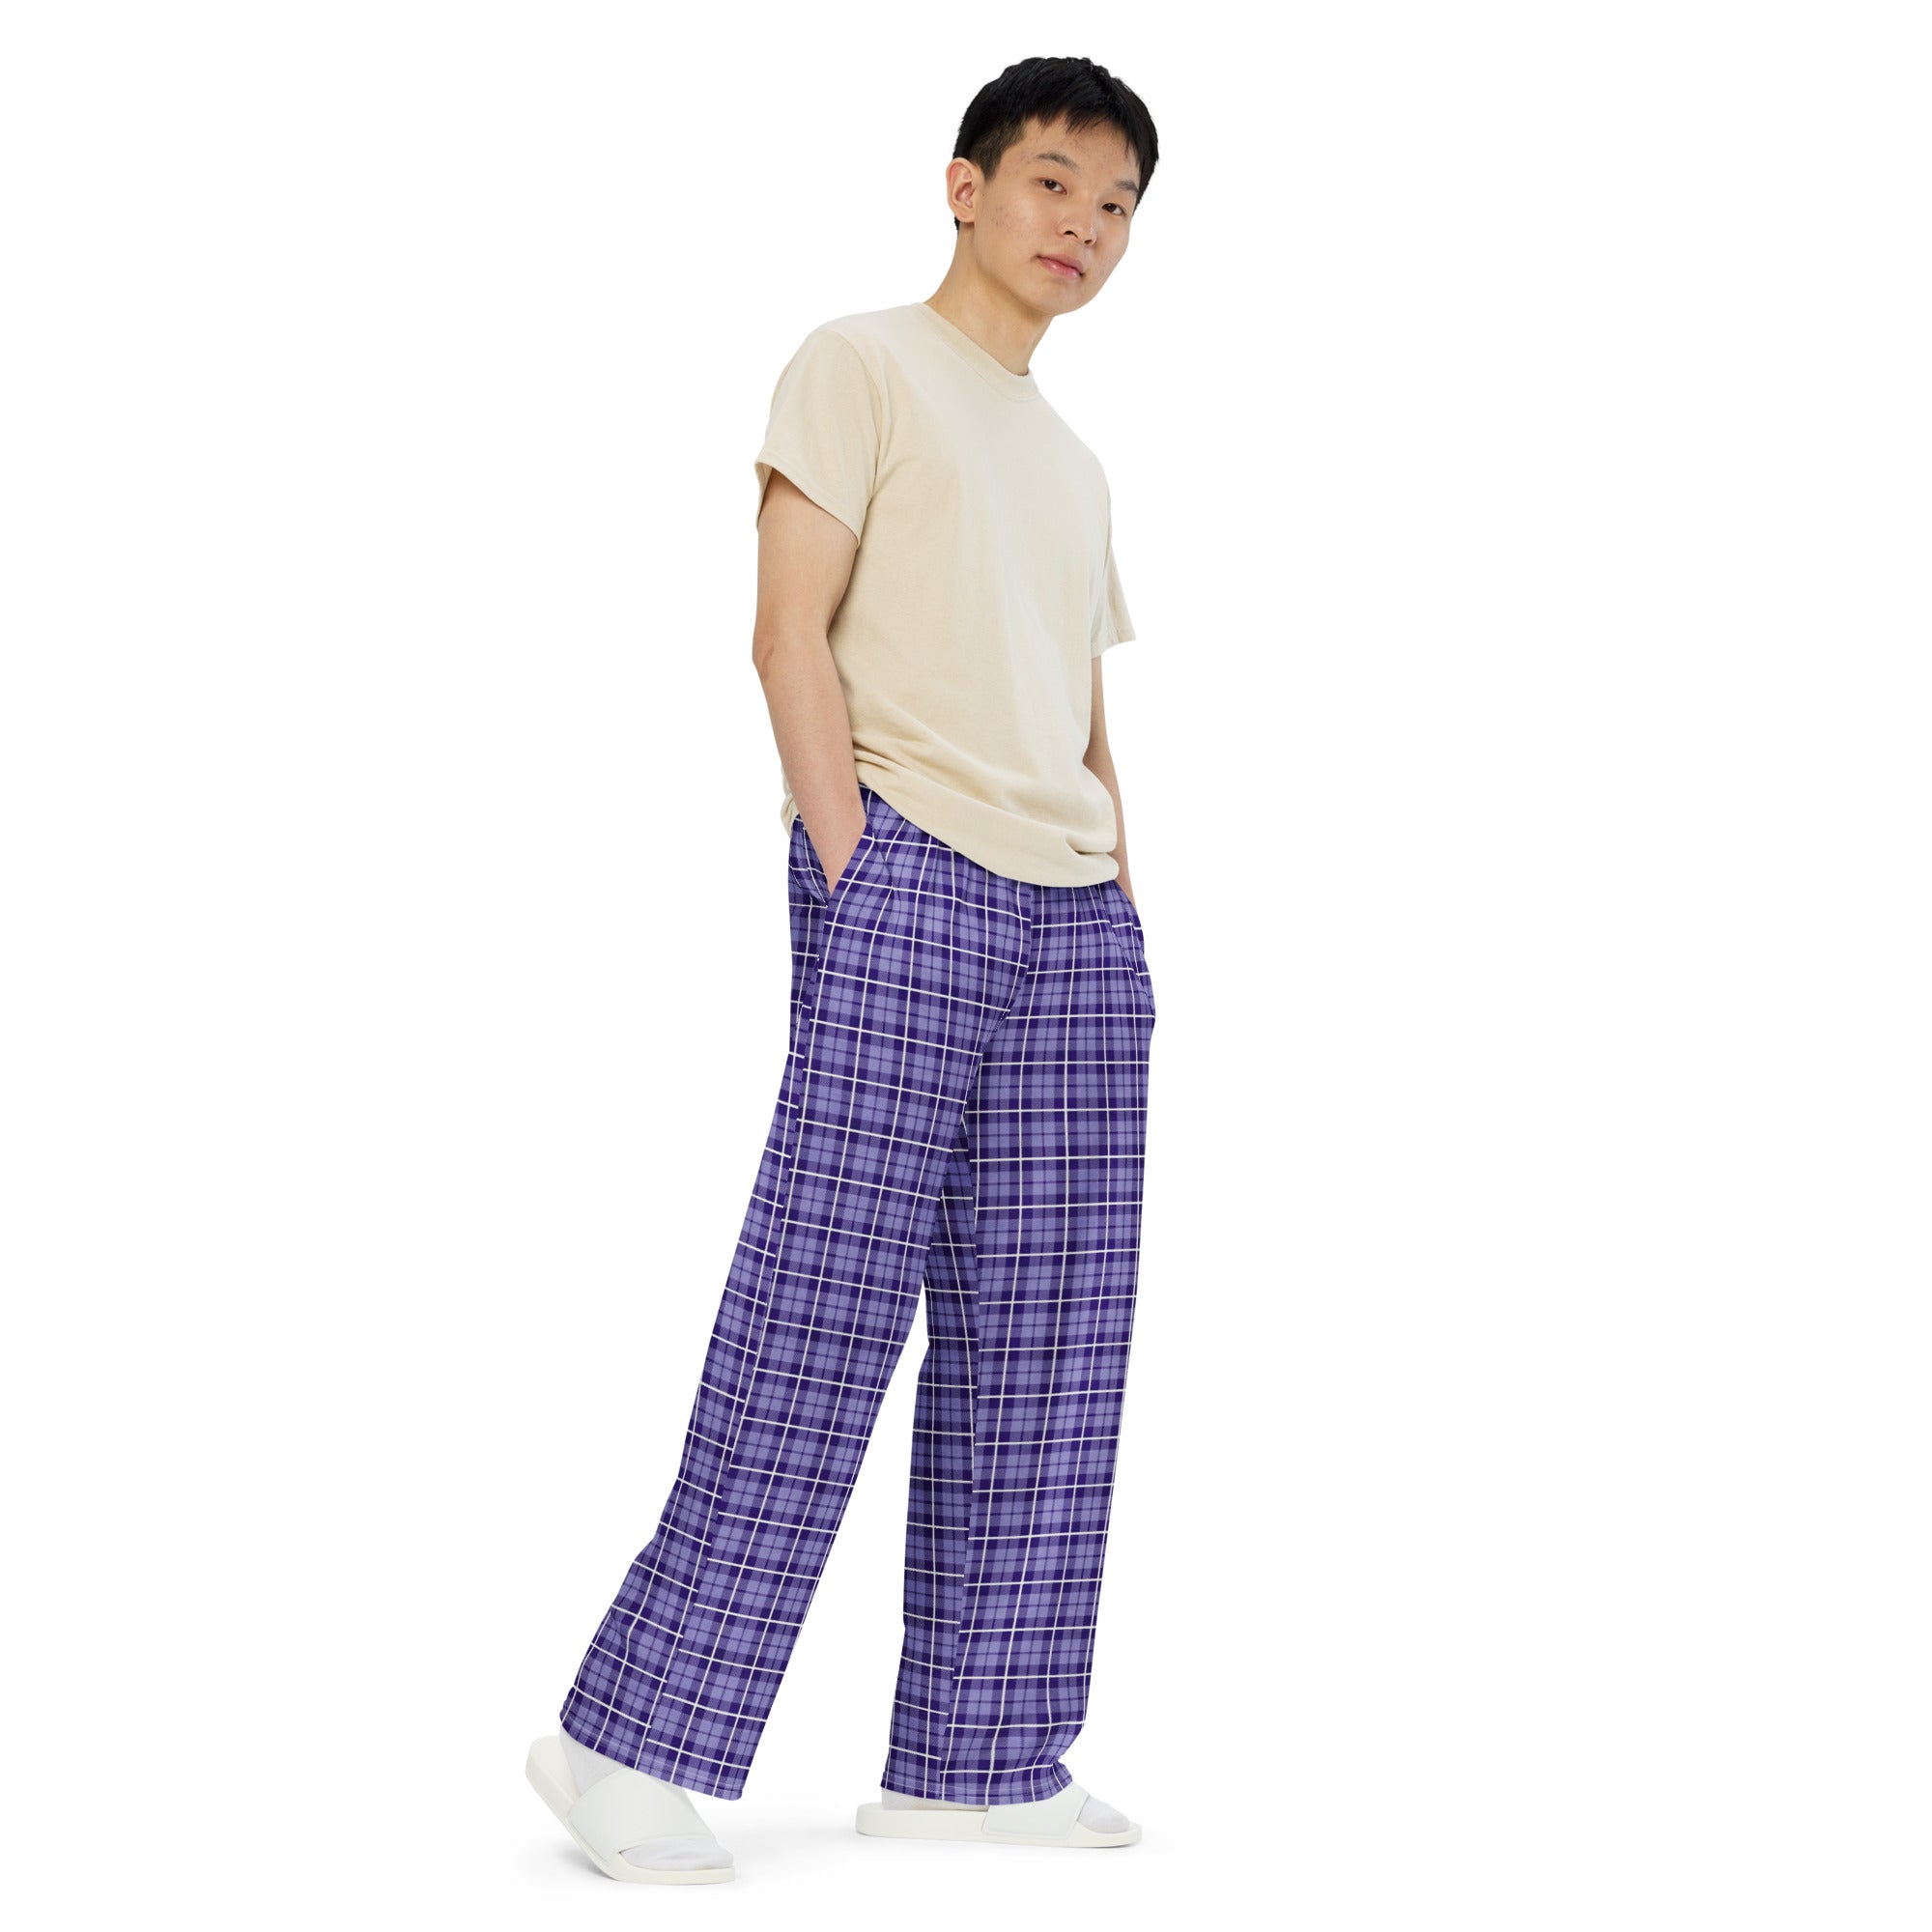 unisex wide-leg pants- Tartan purple